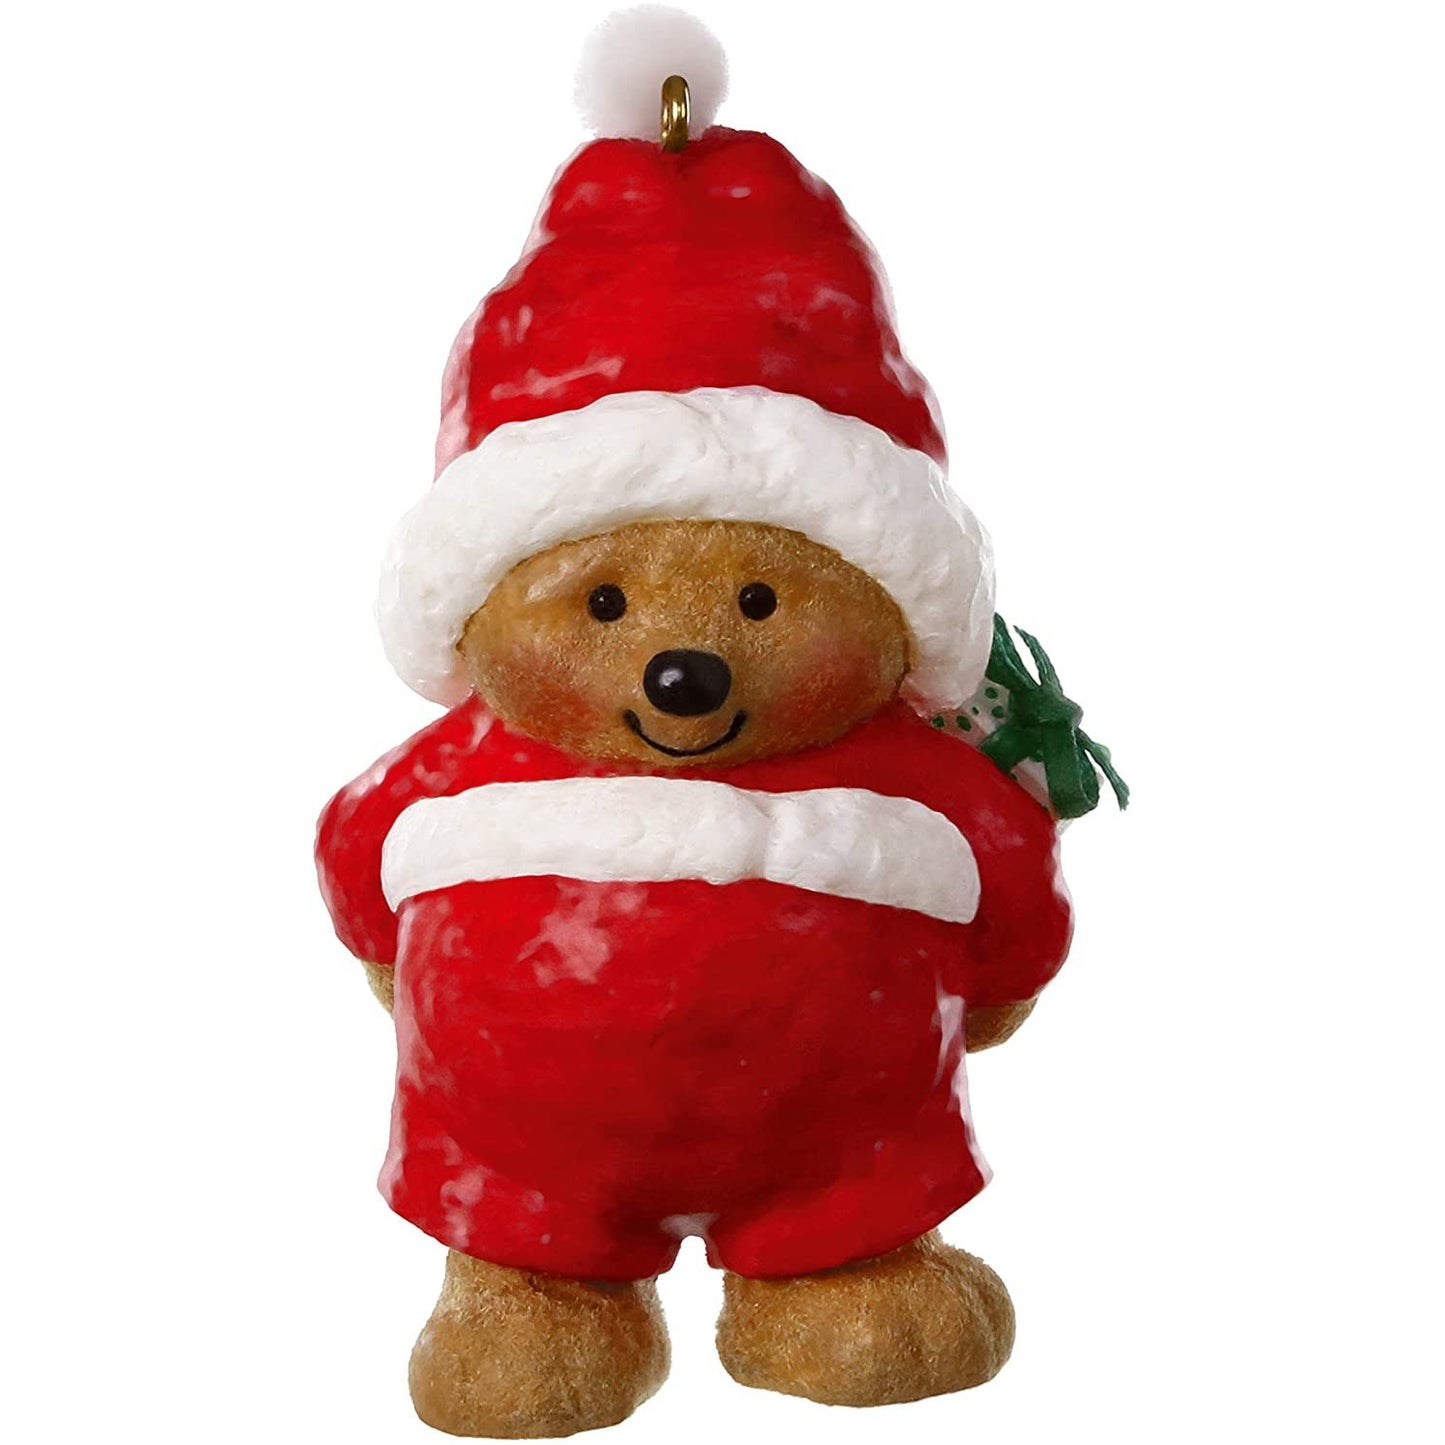 Hallmark Keepsake Christmas Ornament 2020, Mary Hamilton's Bears Ho-Ho-Holiday Santa Bear